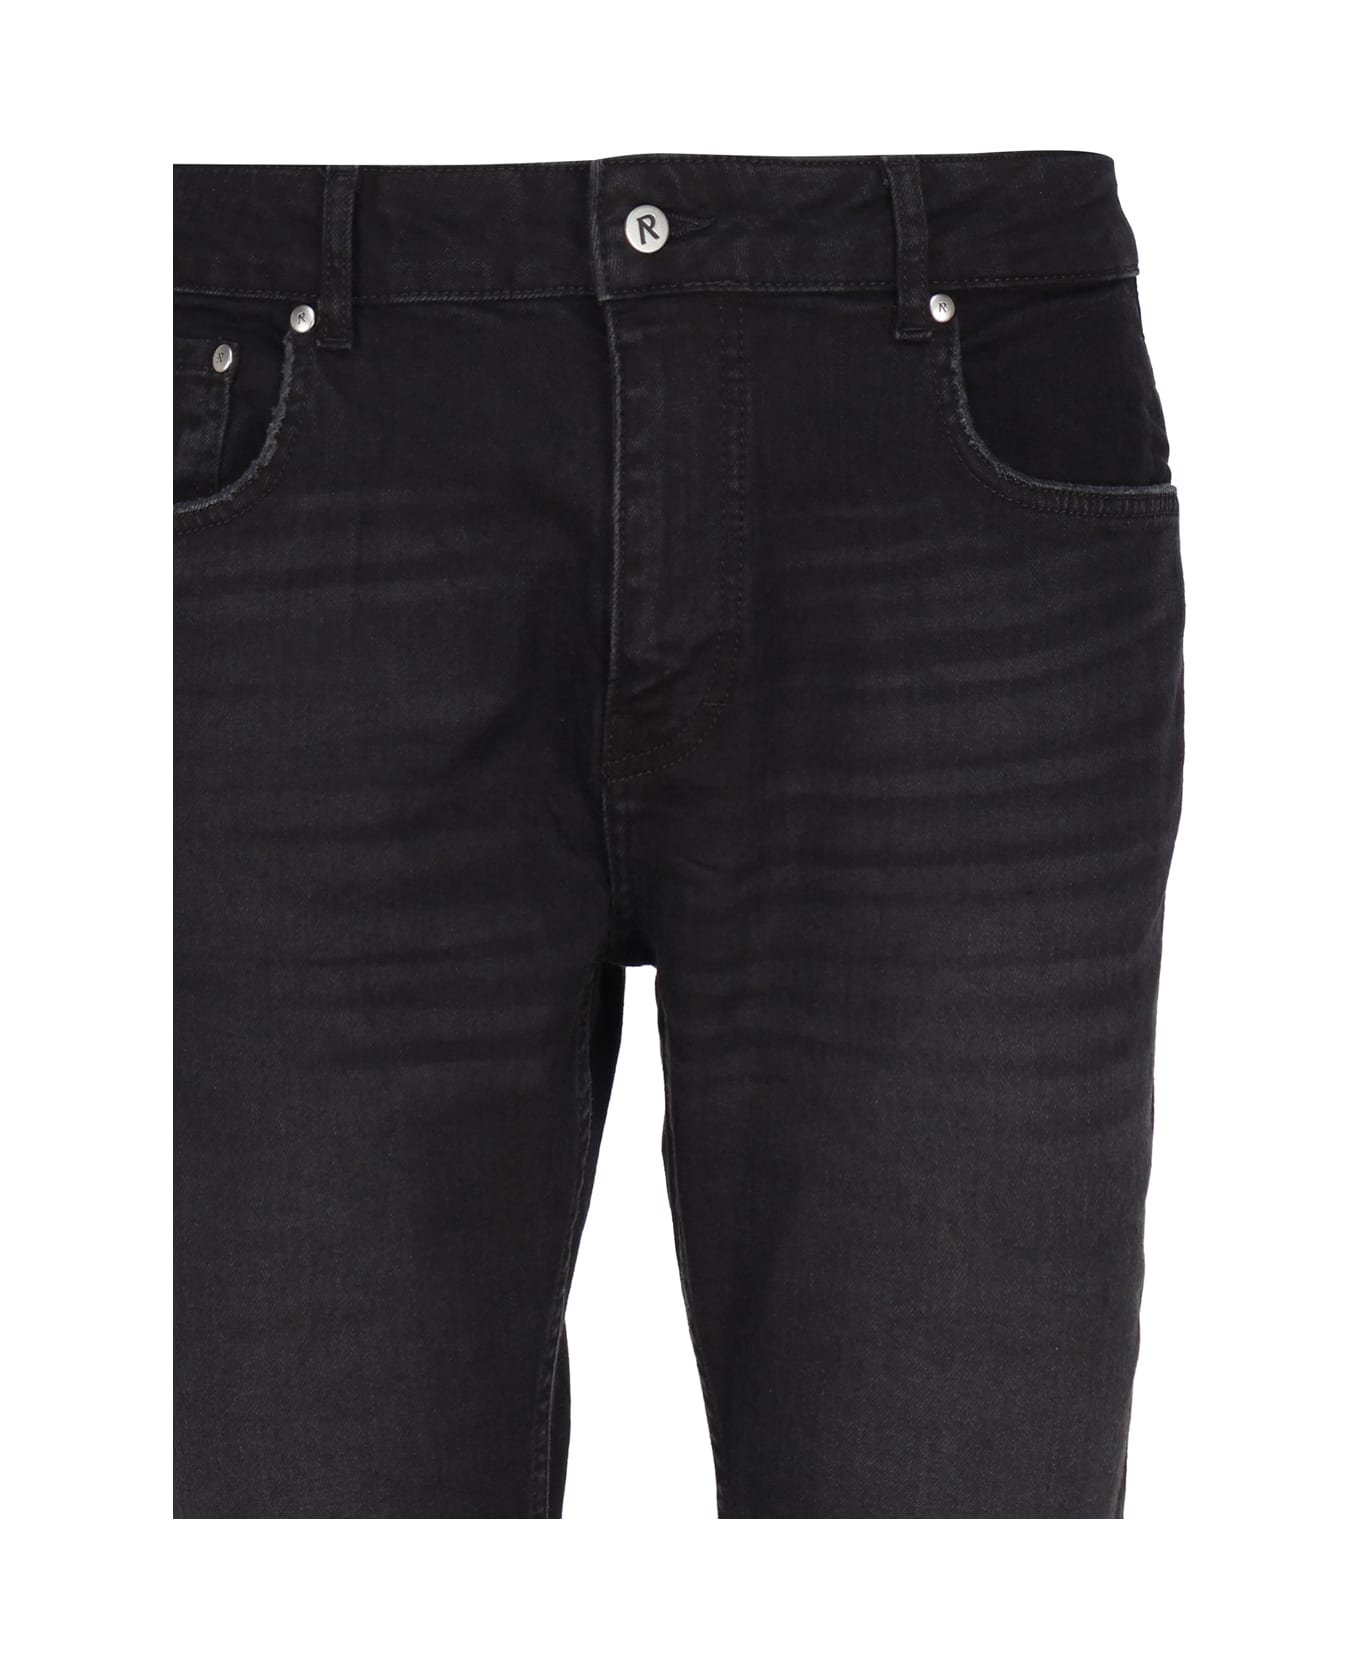 REPRESENT Classic Jeans In Denim Cotton - Black デニム